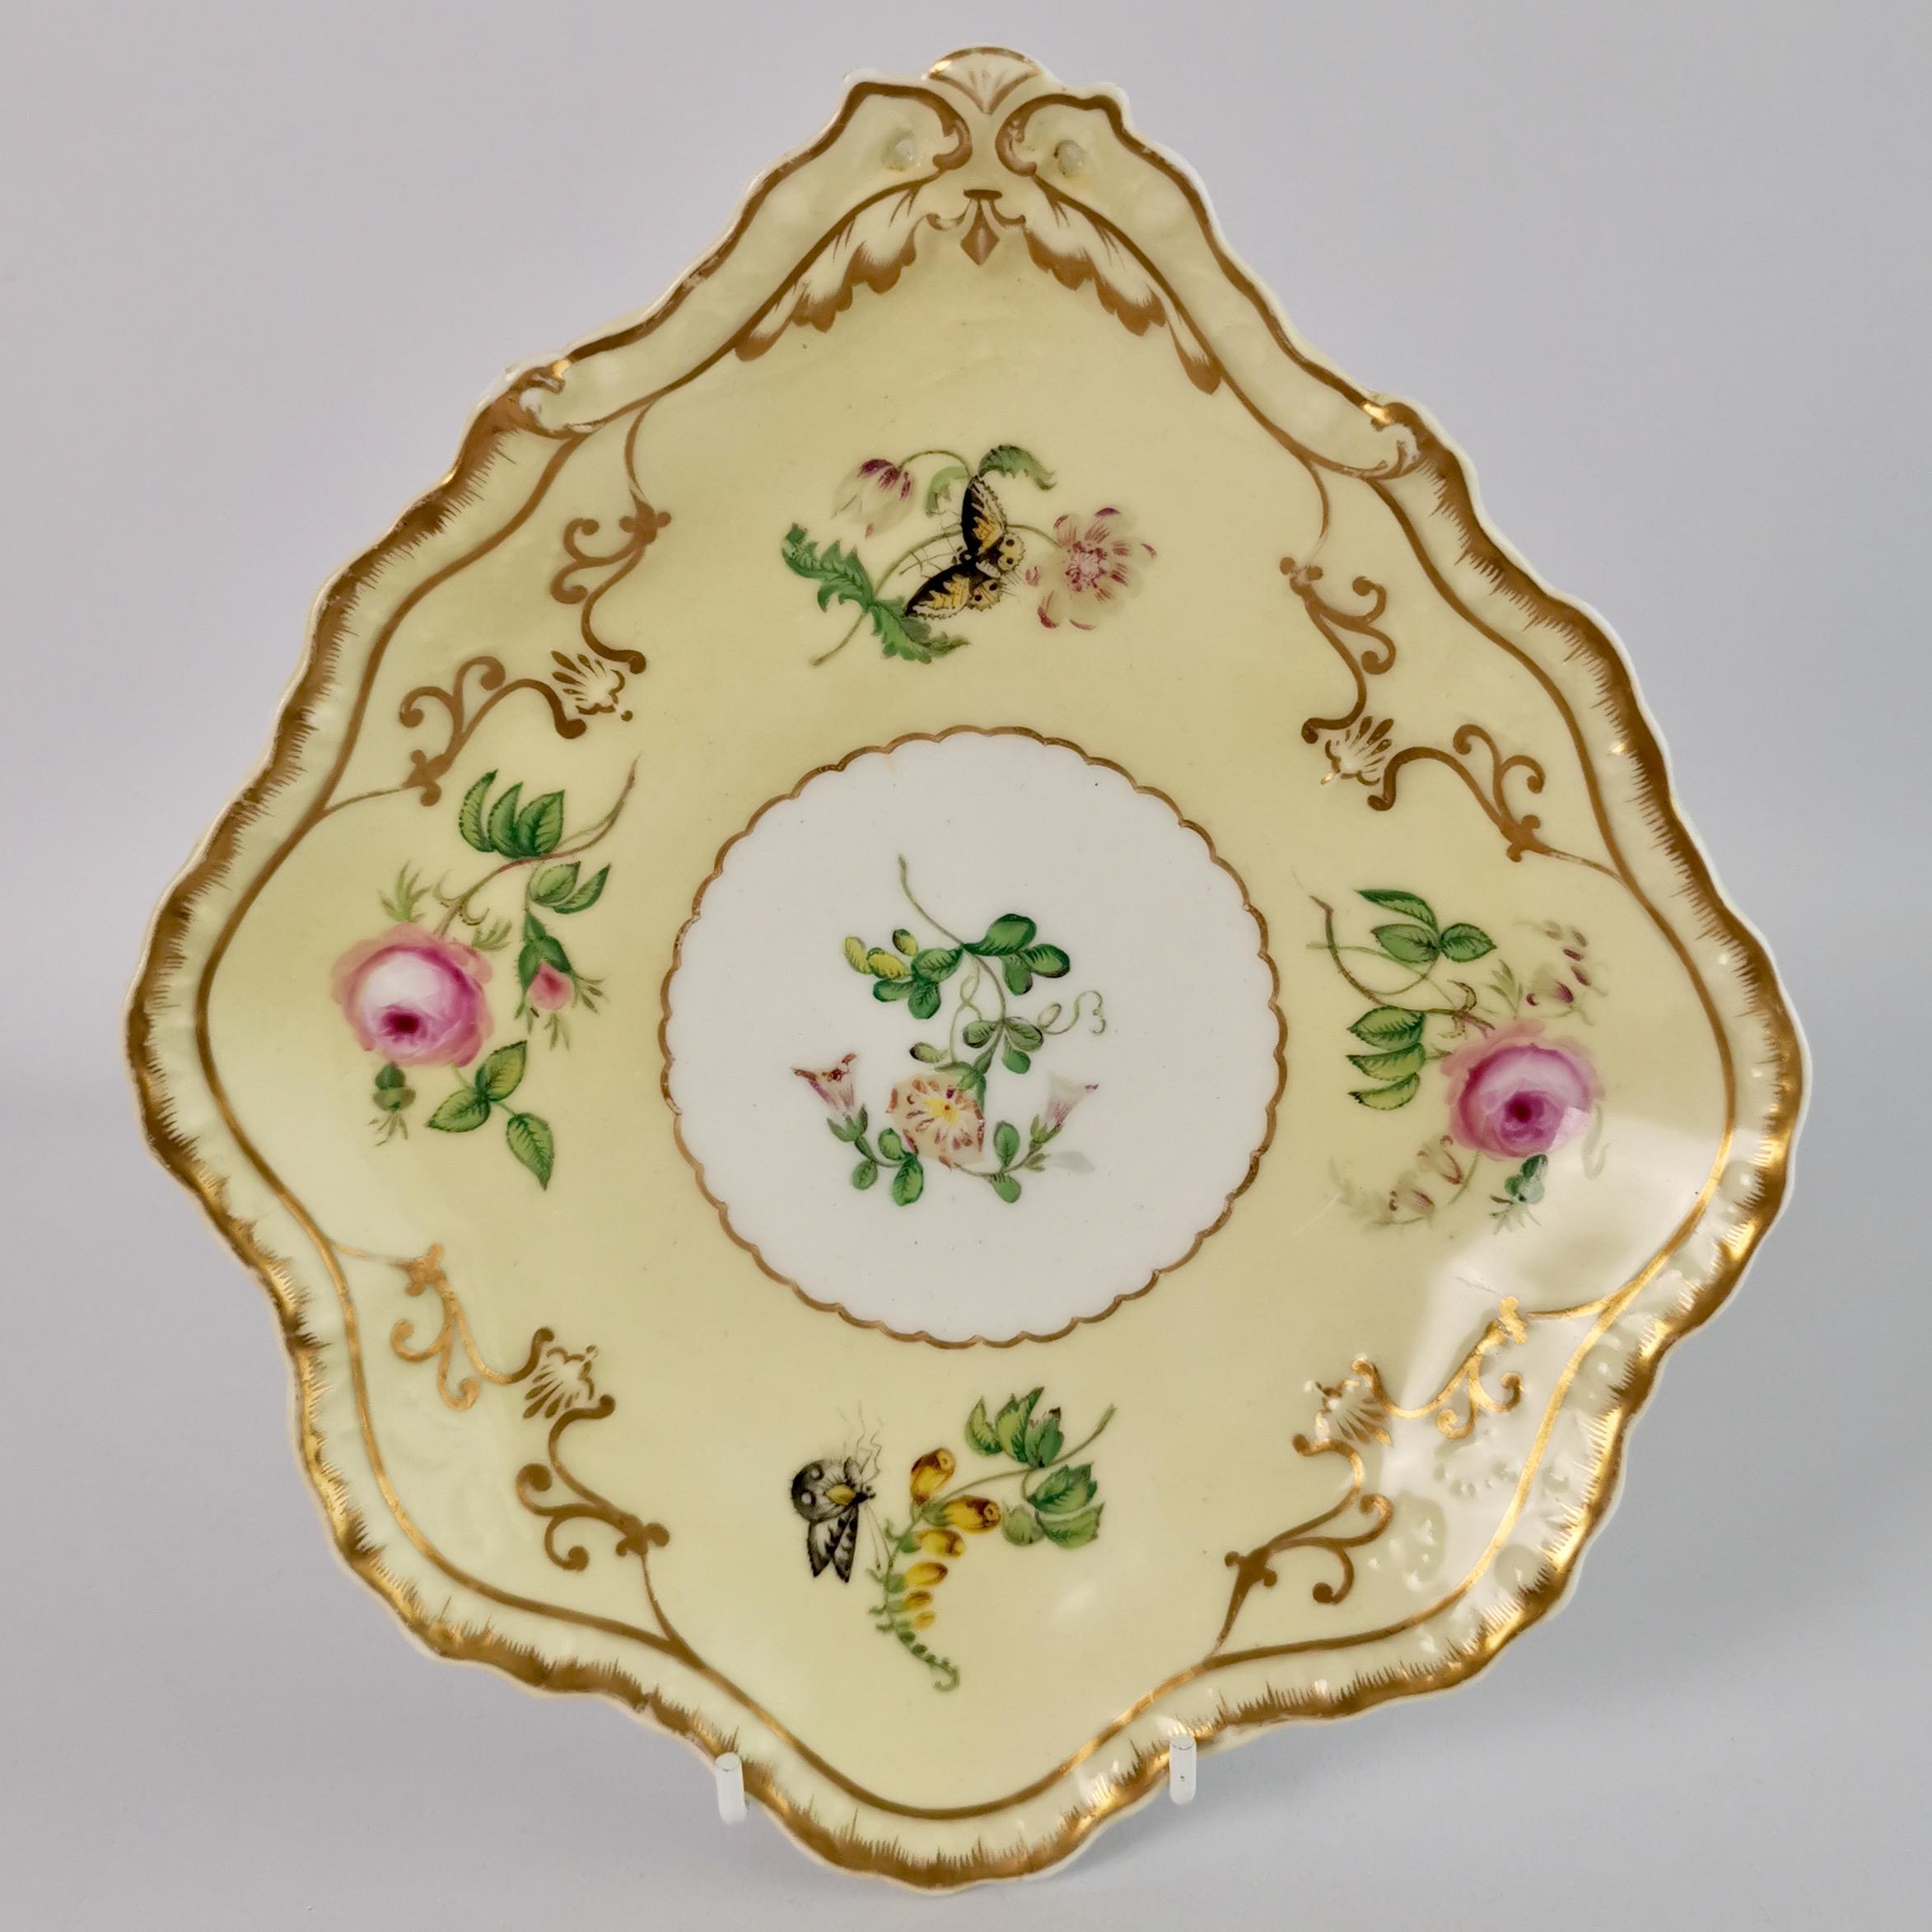 Rococo Revival Copeland & Garrett Porcelain Dessert Set, Yellow with Butterflies, 1833-1847